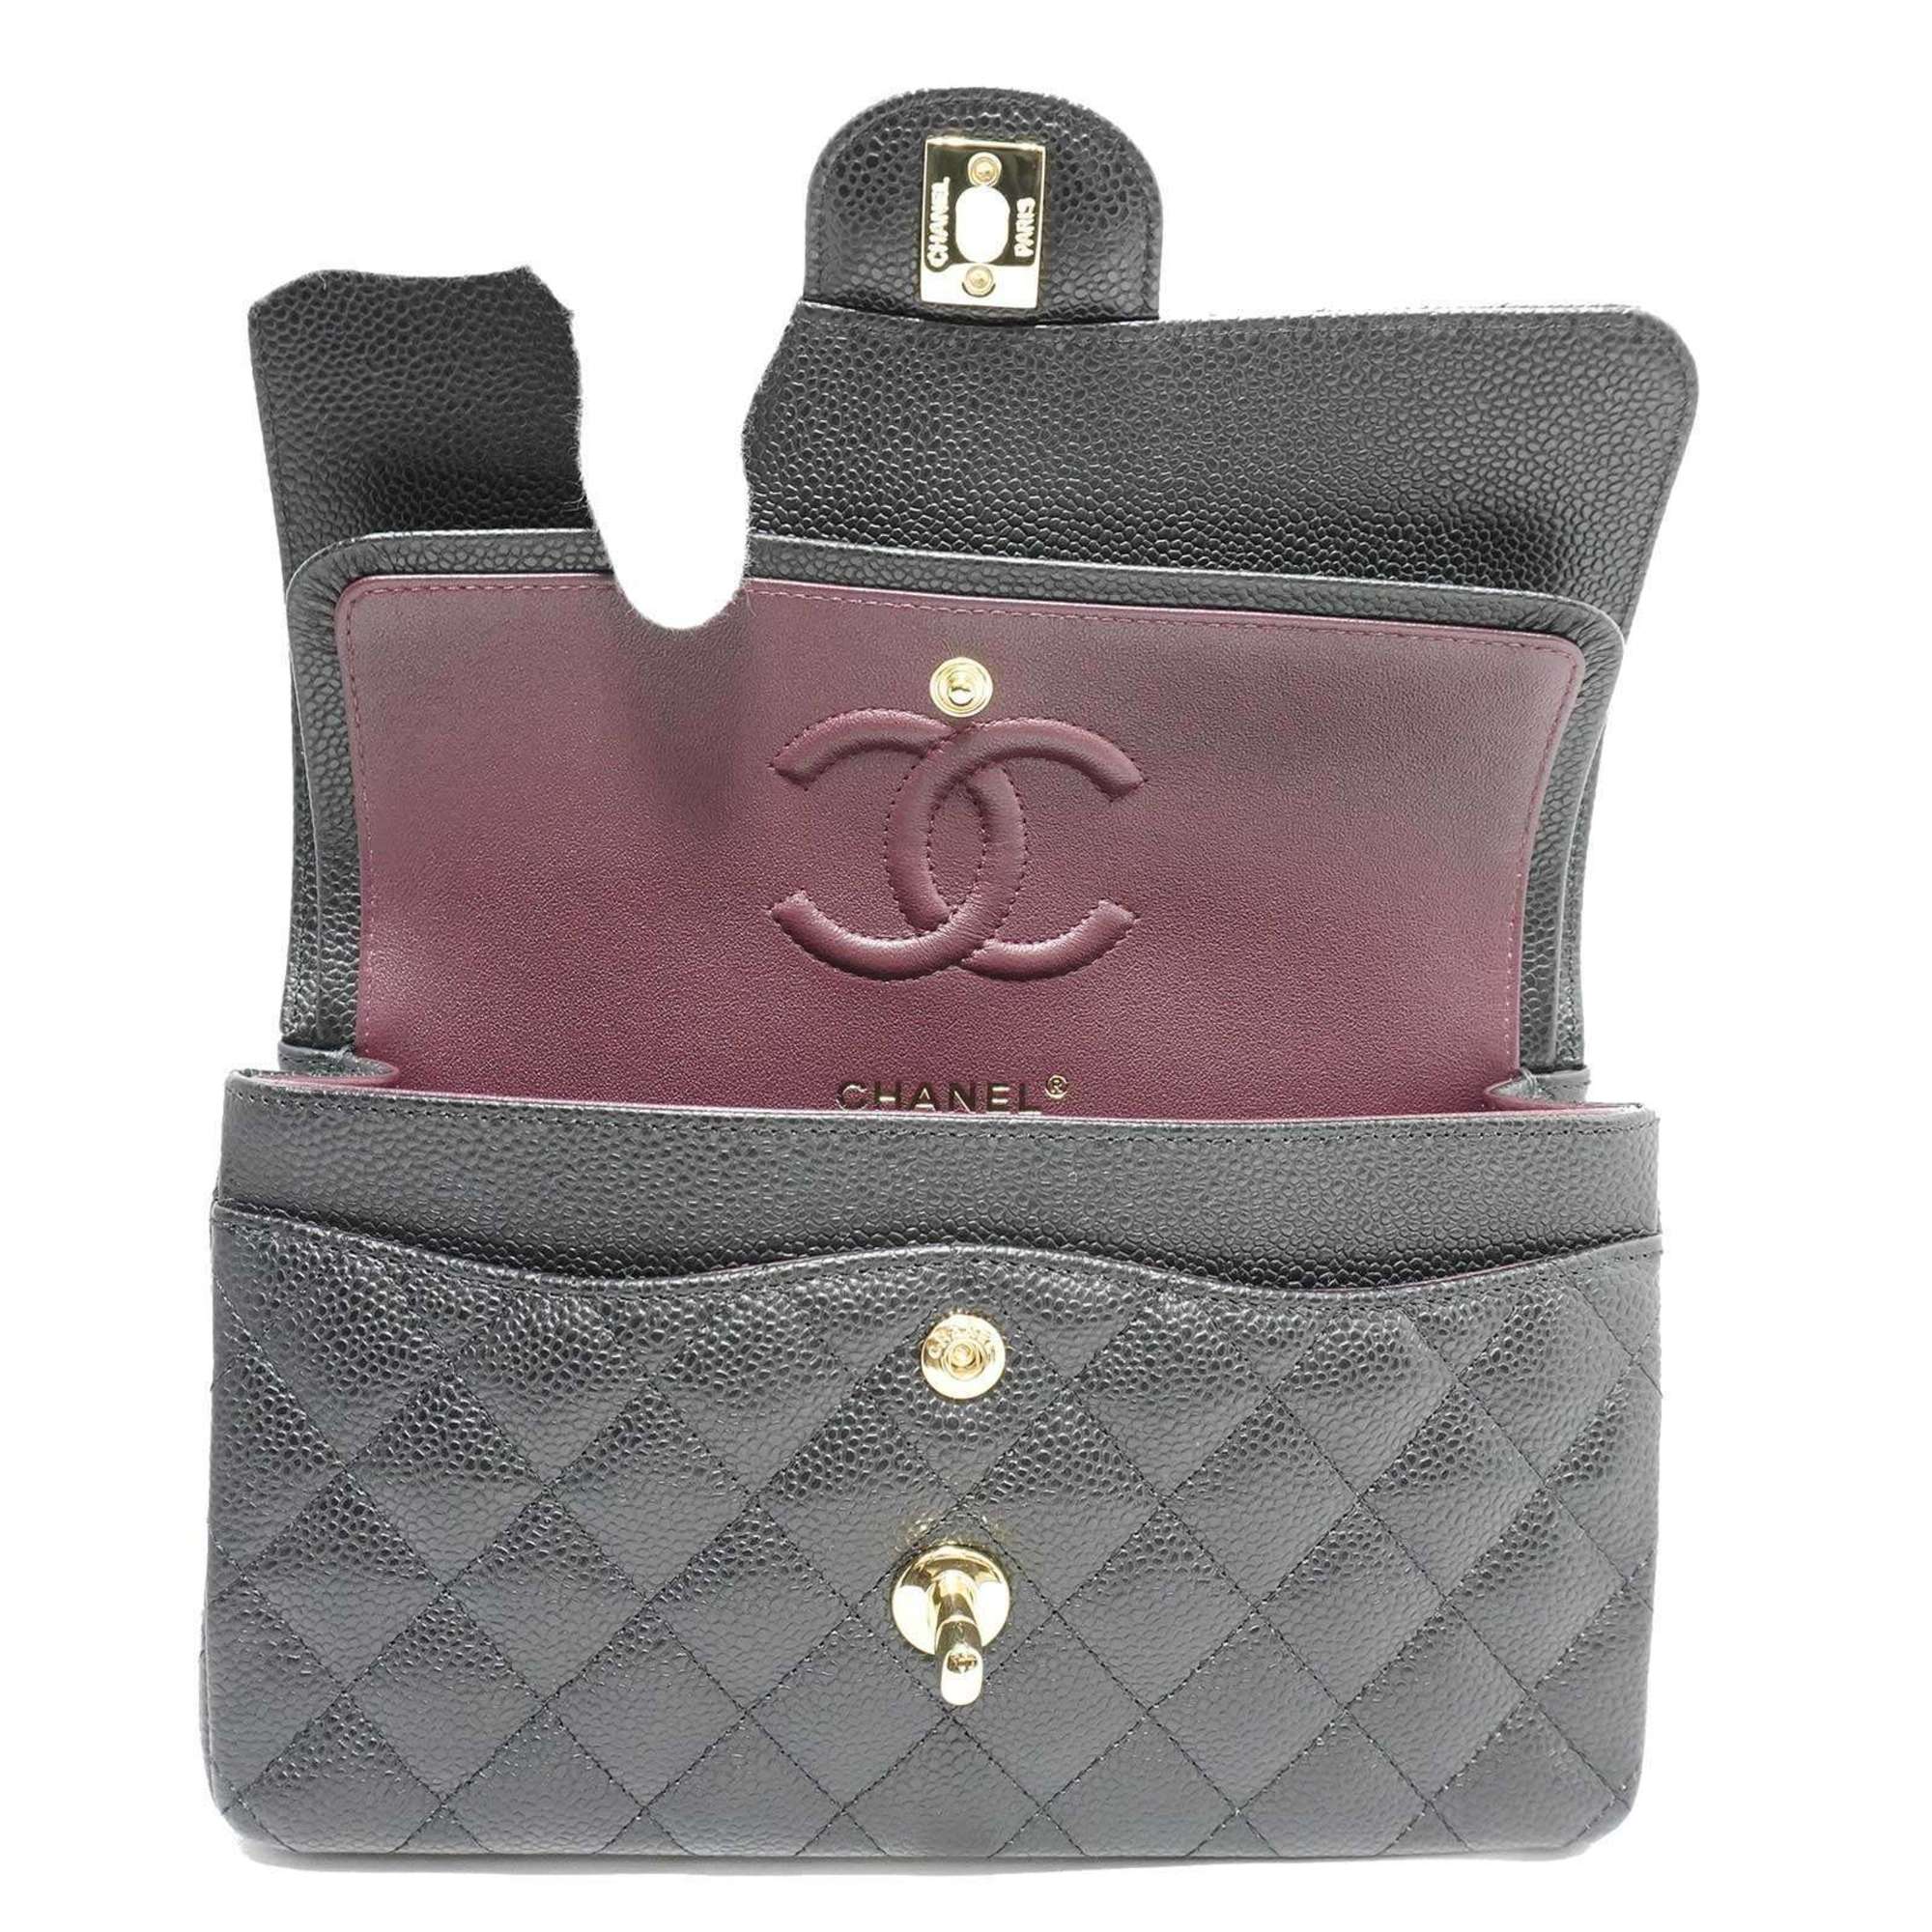 CHANEL Classic Small Handbag A01113 Shoulder Bag Black Caviar Skin Women's Men's